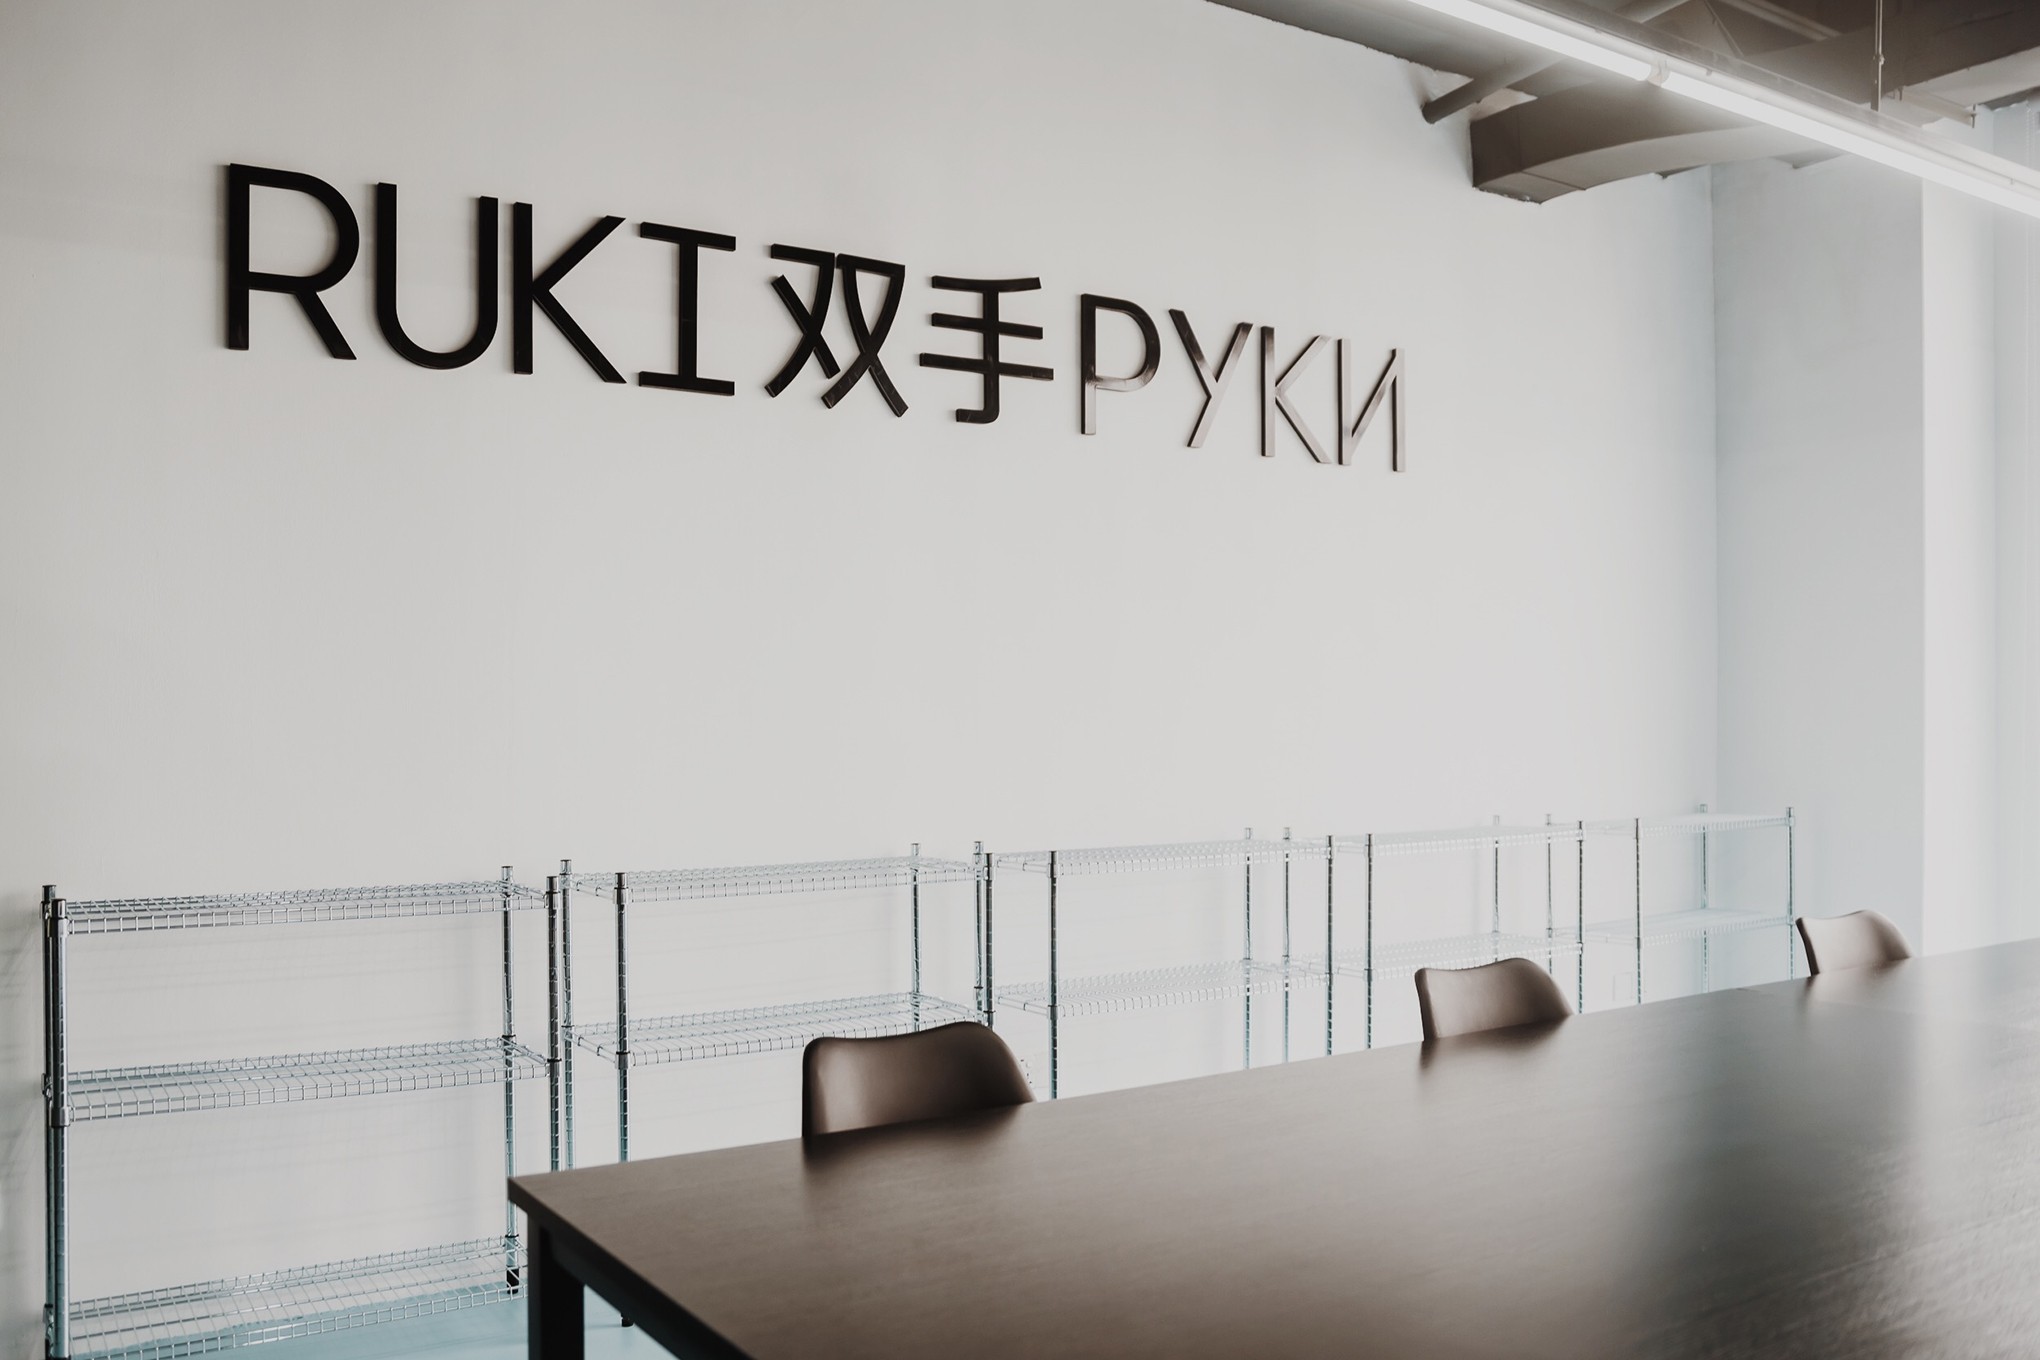 Через год: Как создатели Lapka придумали RUKI и их вселенную — больше чем инкубатор в Китае